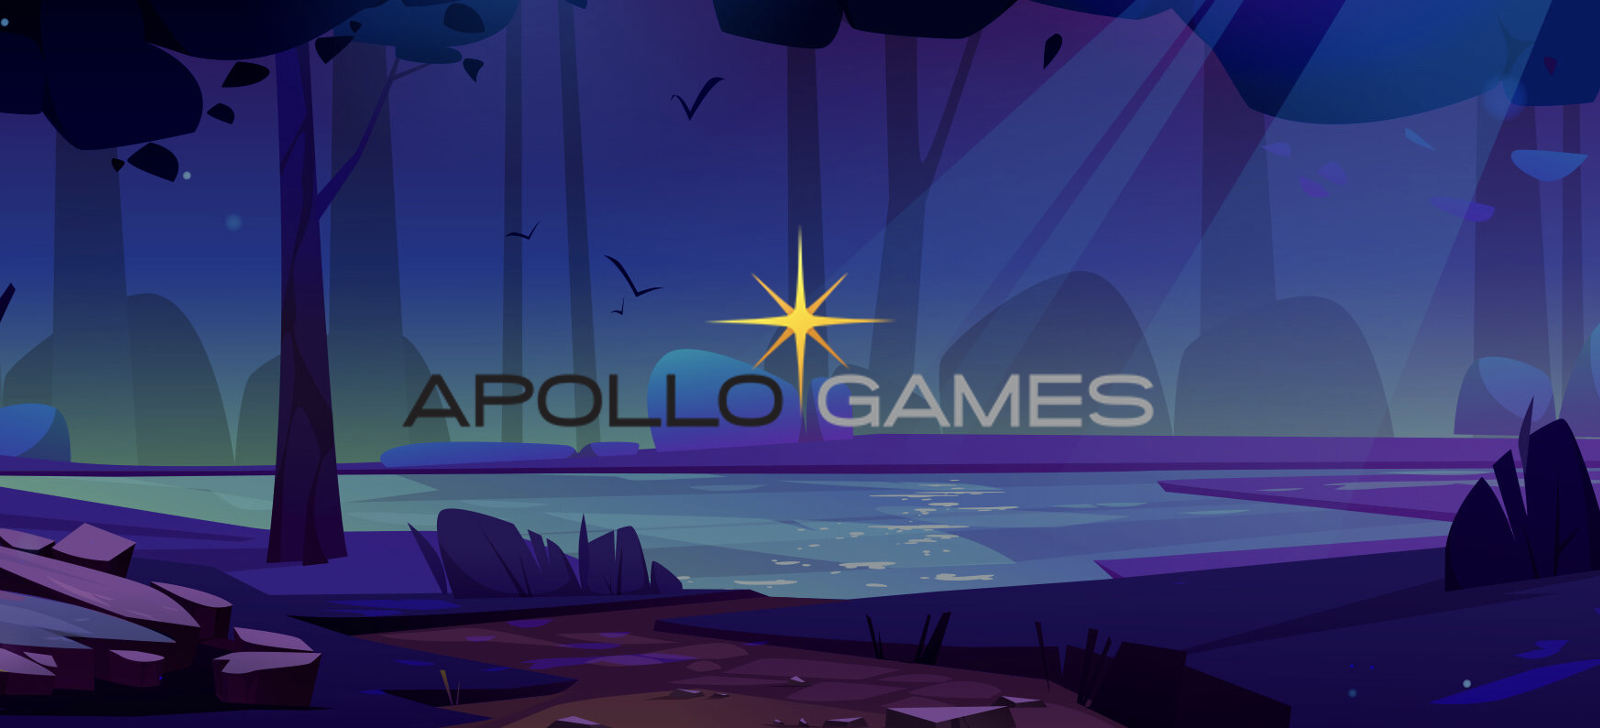 Poskytovatel Apollo Games – Proč stojí za to vyzkoušet Apollo kasino hry?